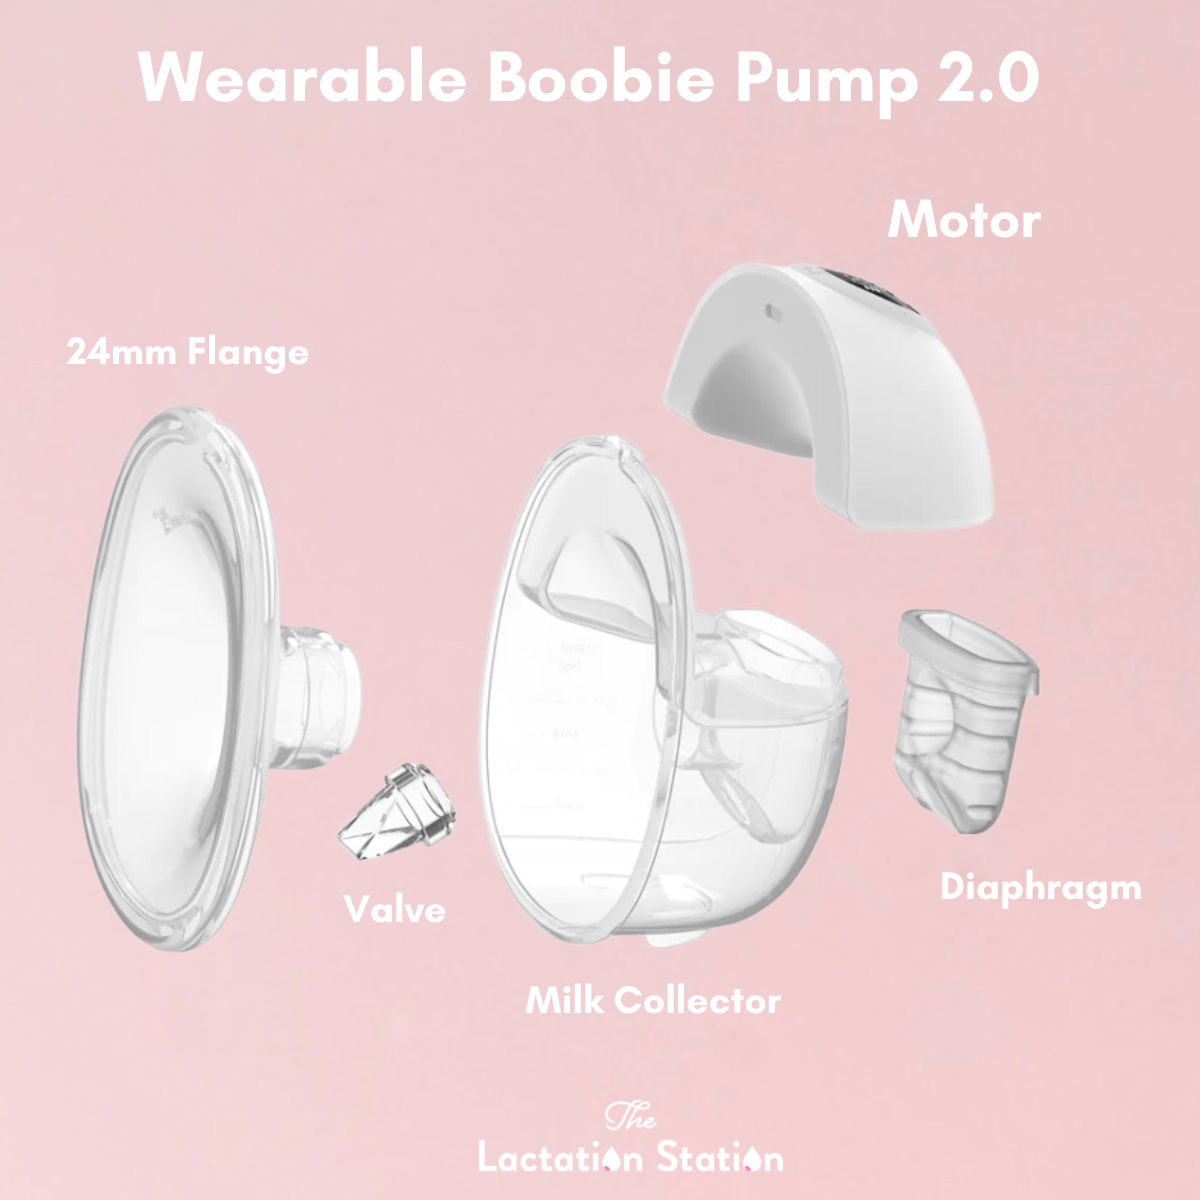 Wearable Boobie Pump 2.0